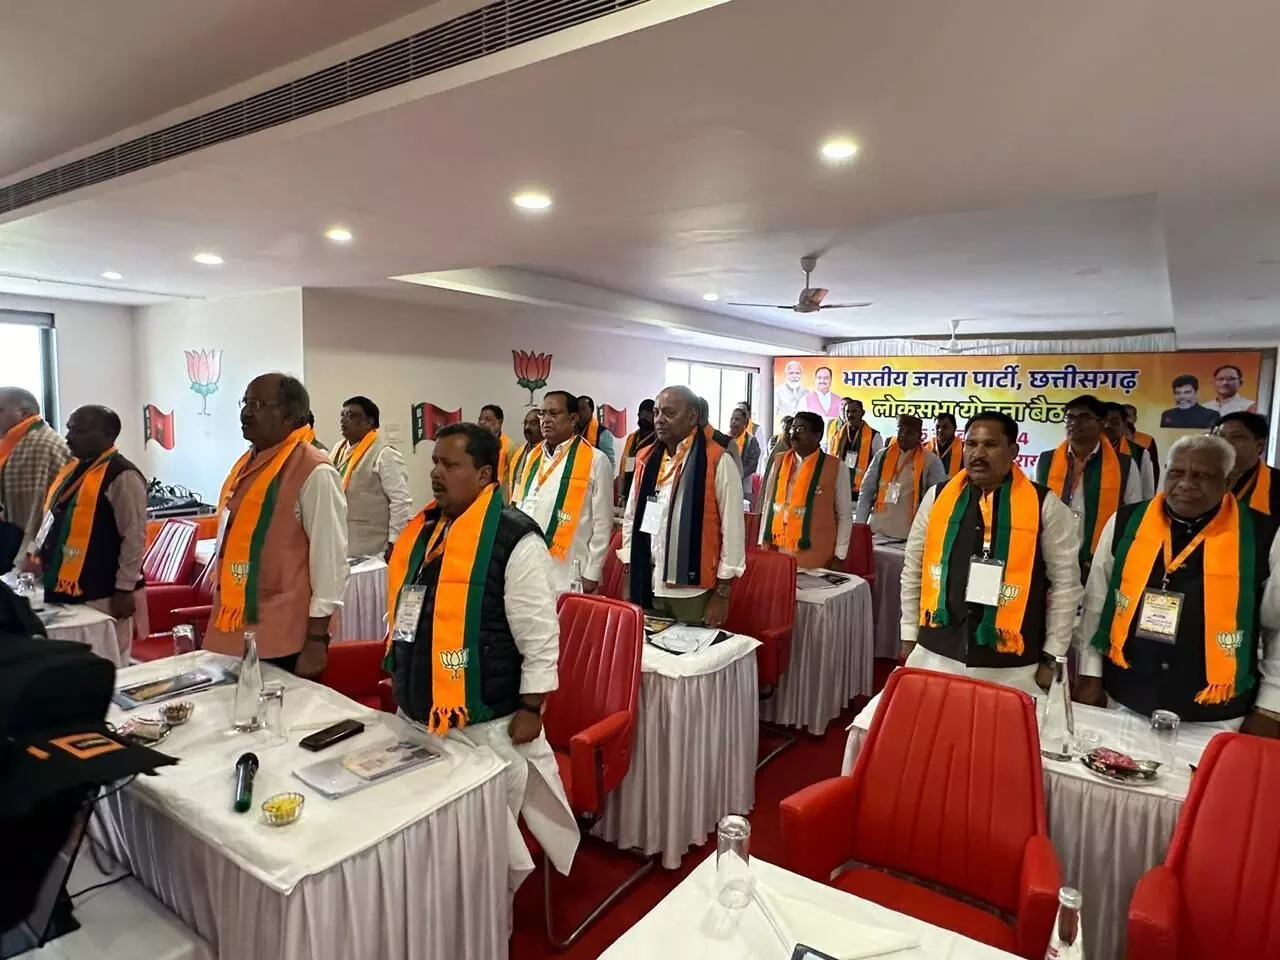 जैनम मानस भवन, रायपुर में आज भारतीय जनता पार्टी छत्तीसगढ़ के वरिष्ठ पदाधिकारियों द्वारा आगामी लोकसभा चुनाव के सन्दर्भ में लोकसभा योजना बैठक का आयोजन किया गया। बैठक में सभी वरिष्ठों द्वारा आगामी लोकसभा चुनाव की कार्ययोजनाओं पर चर्चा की गई।